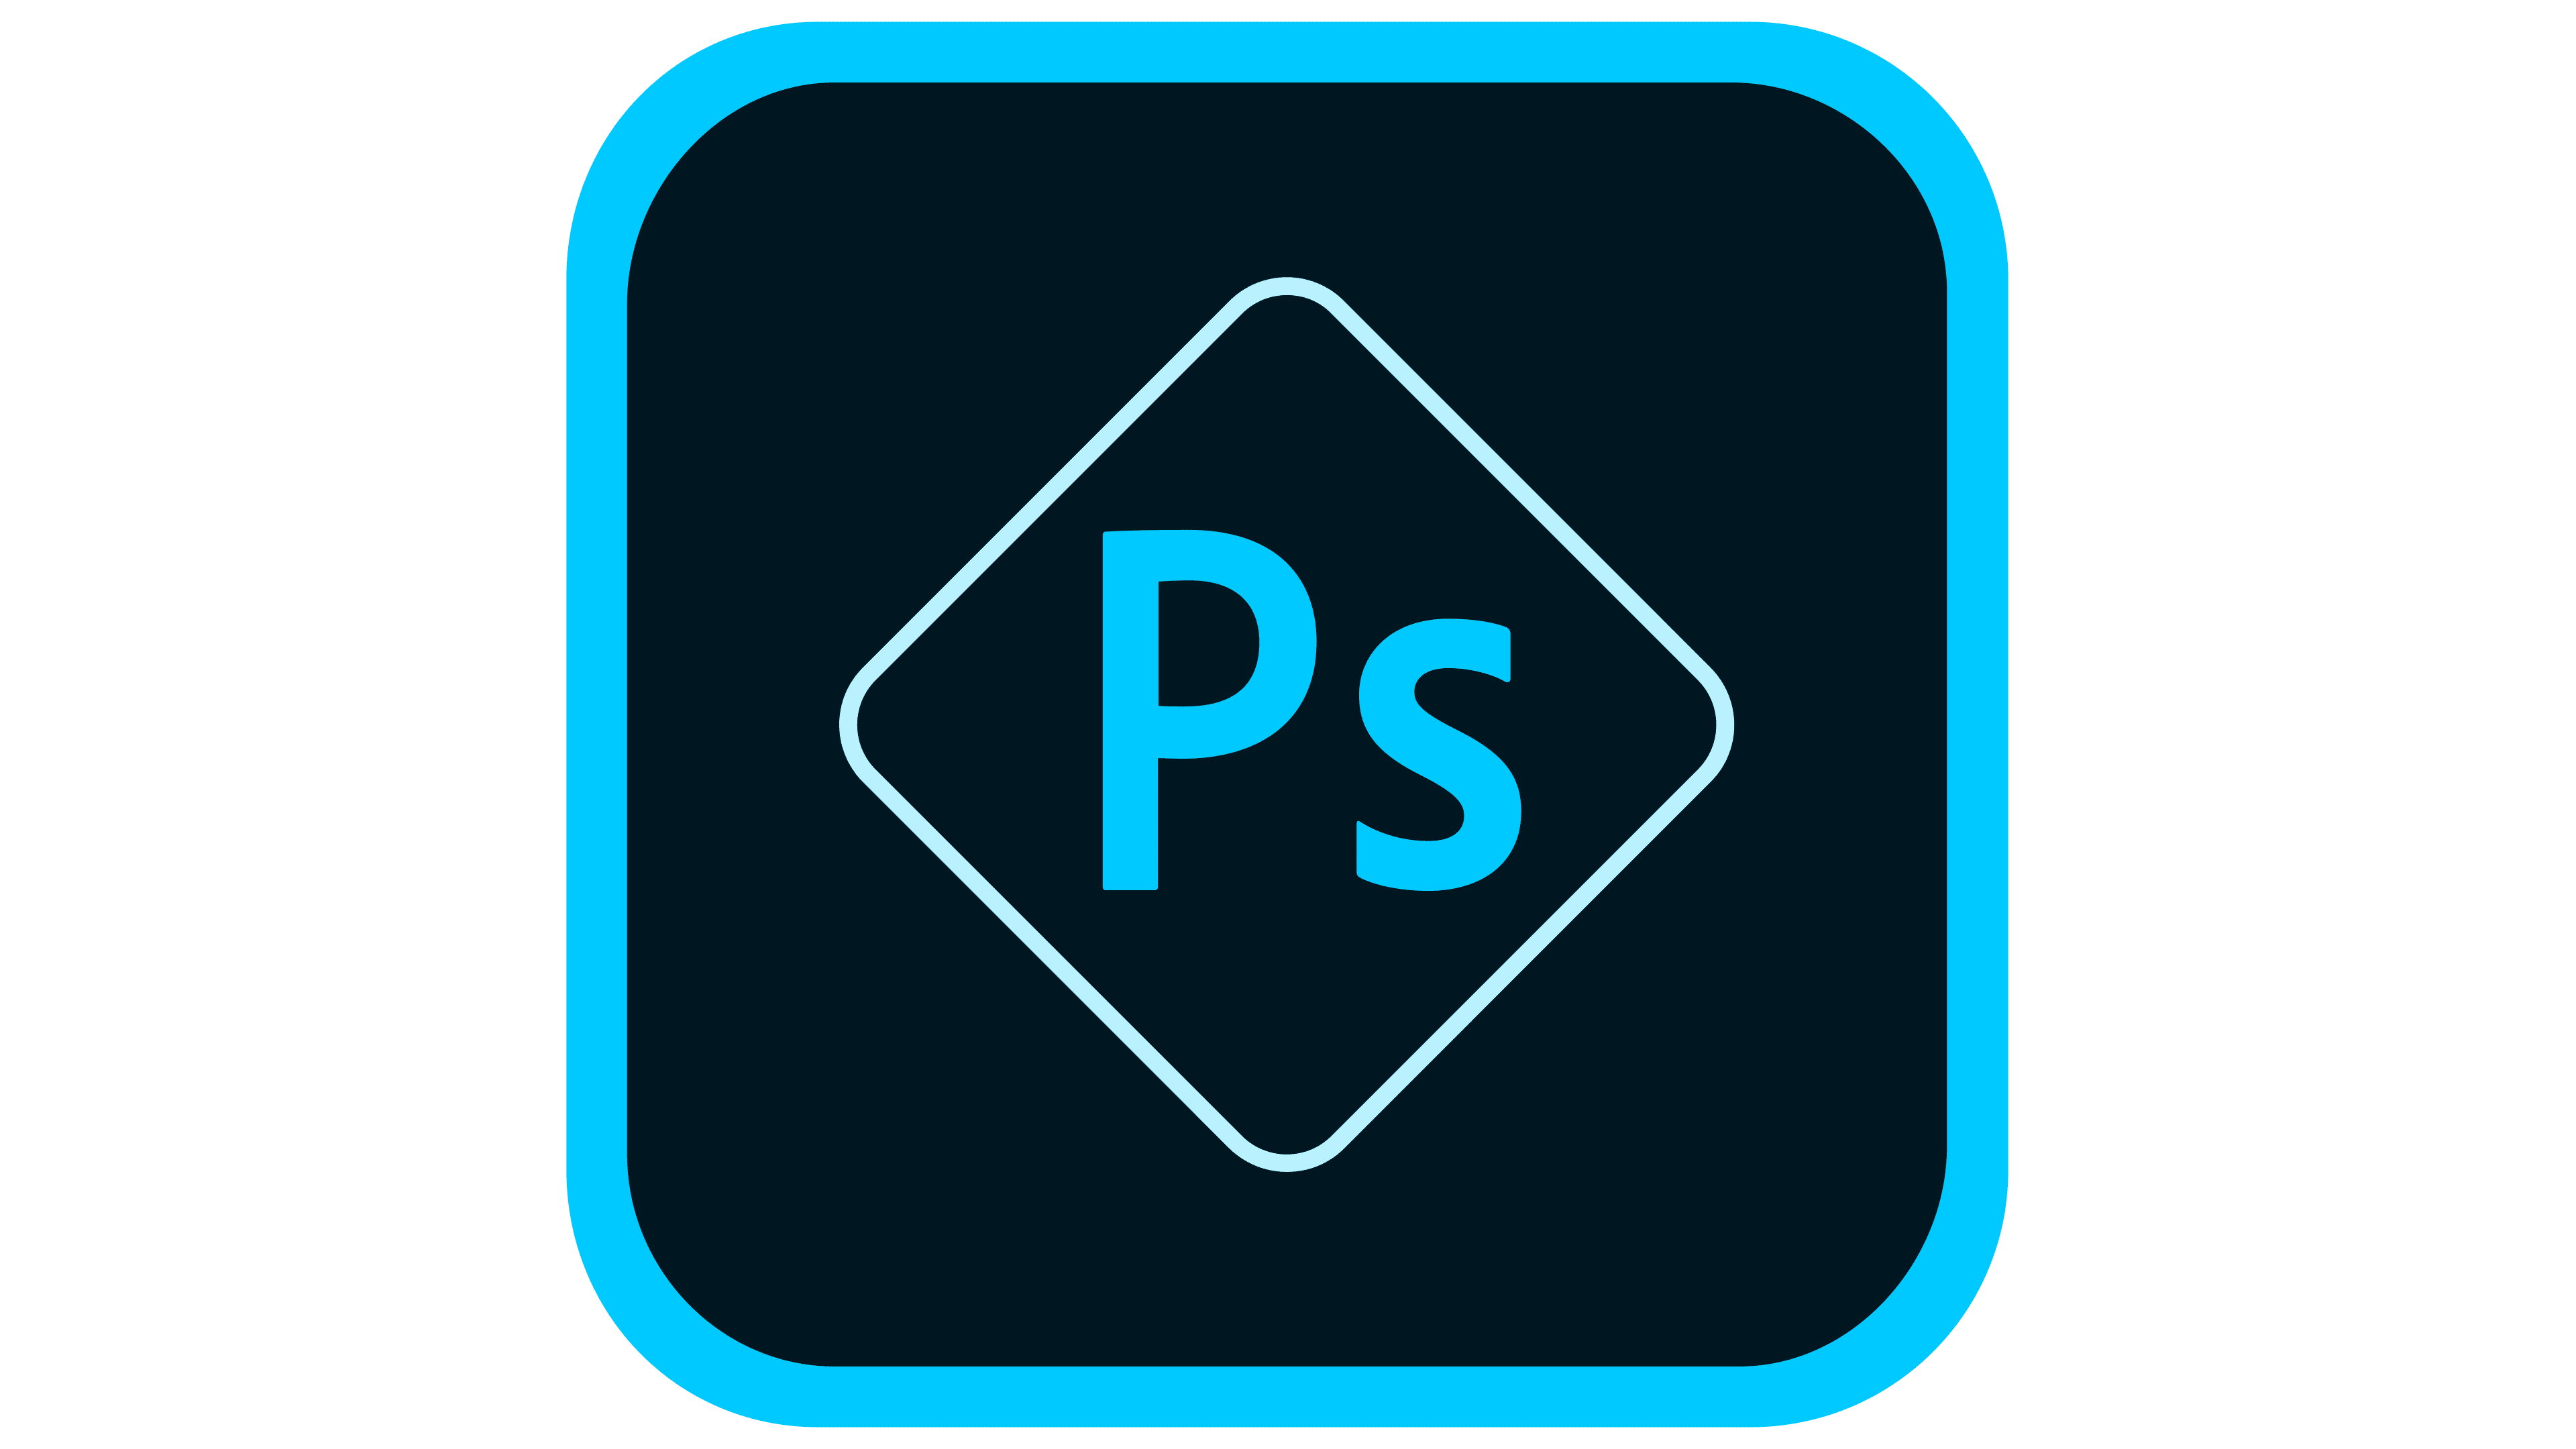 Adobe Photoshop Emblem 